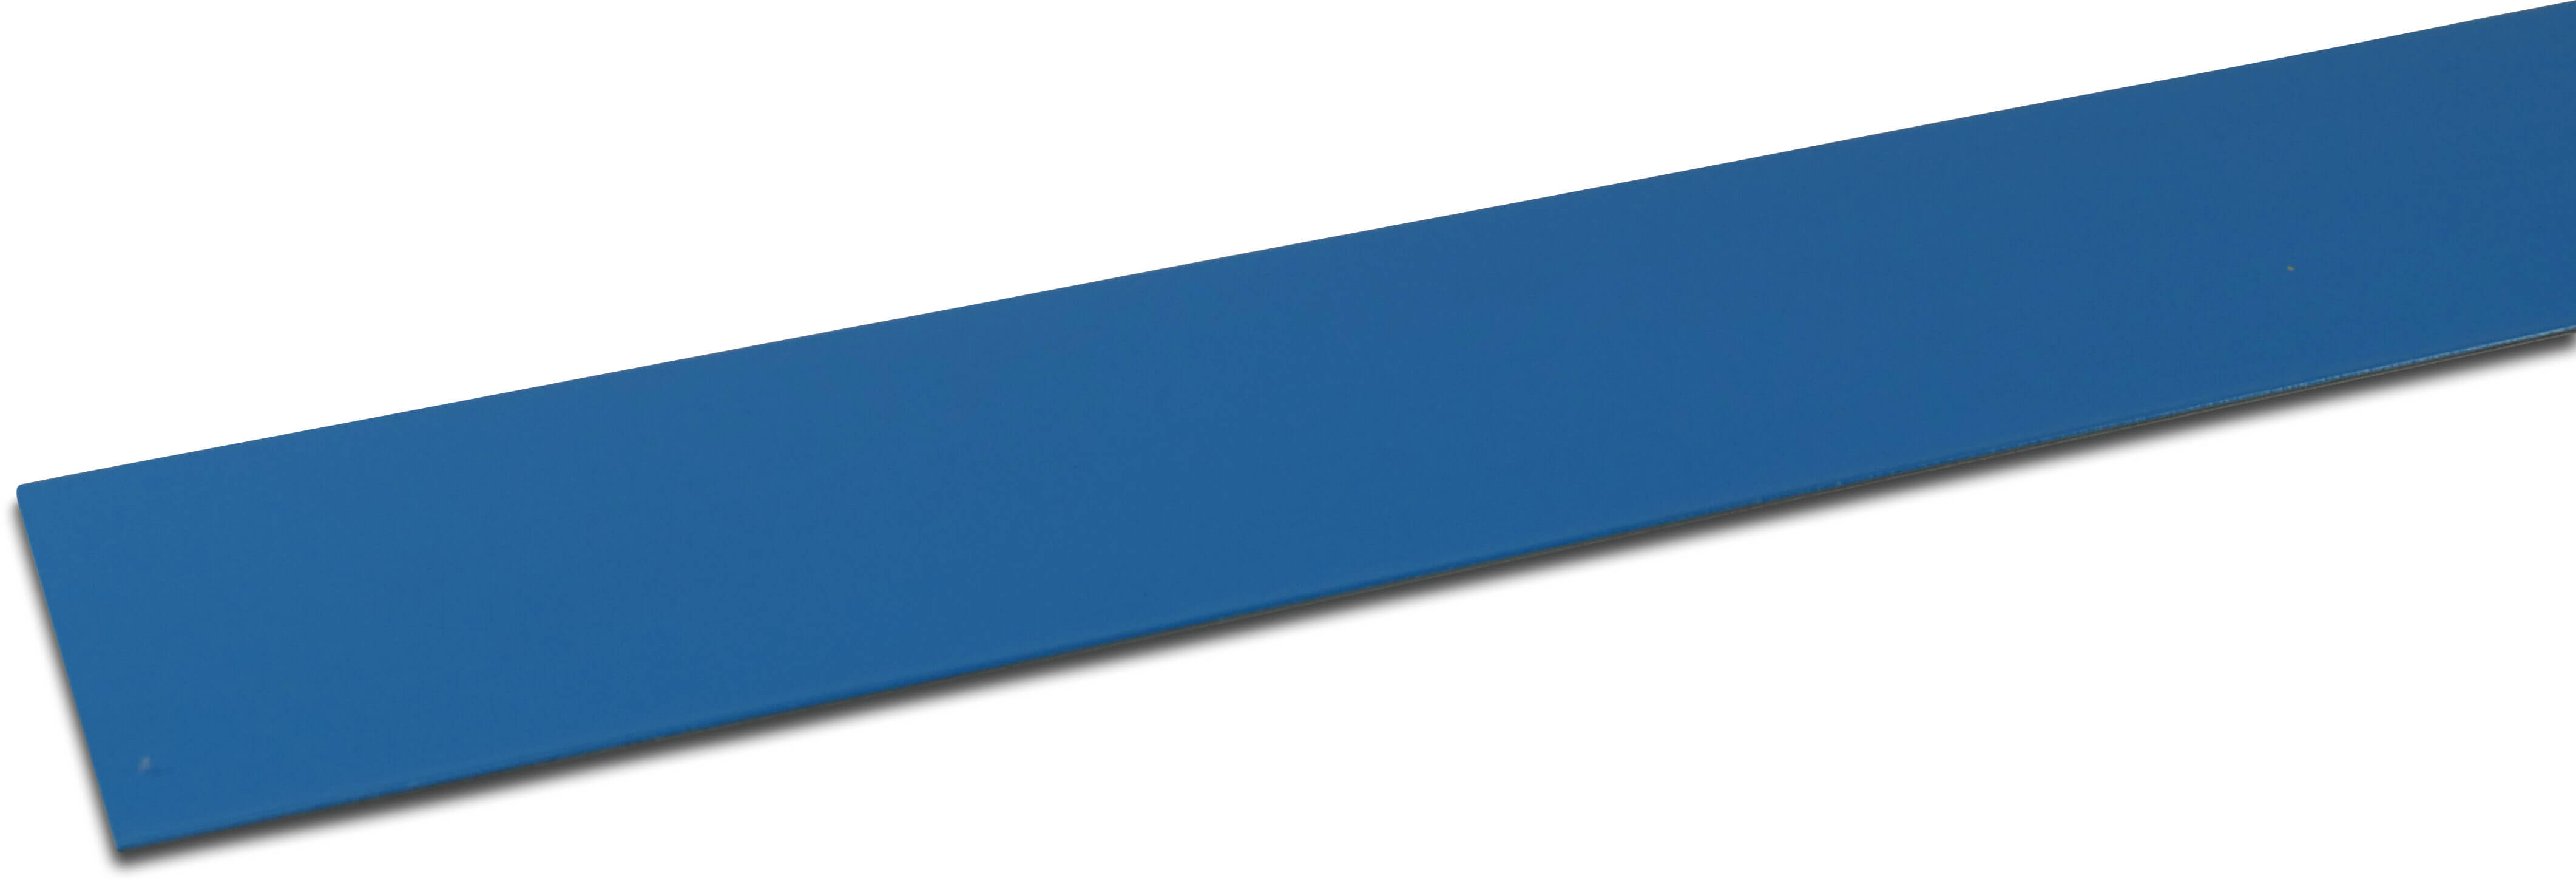 Elbe Profil PVC beschichtet Metal 70 mm x 30 mm x 2000 mm Blau 2m type Innenwinkel